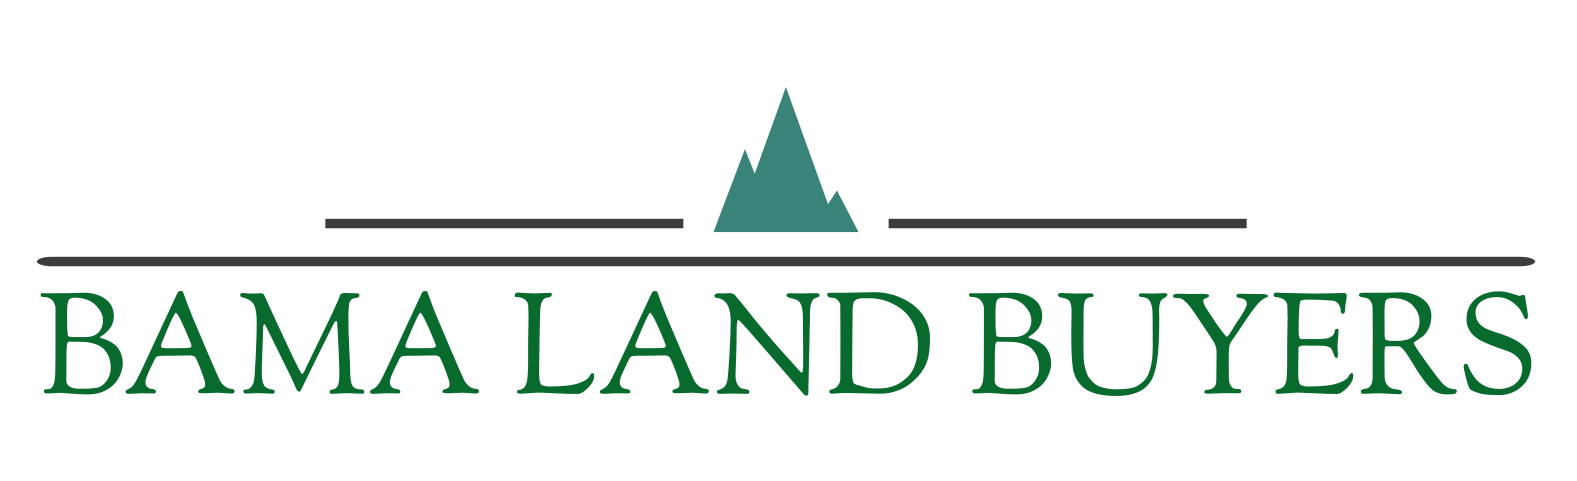 Bama Land Buyers logo